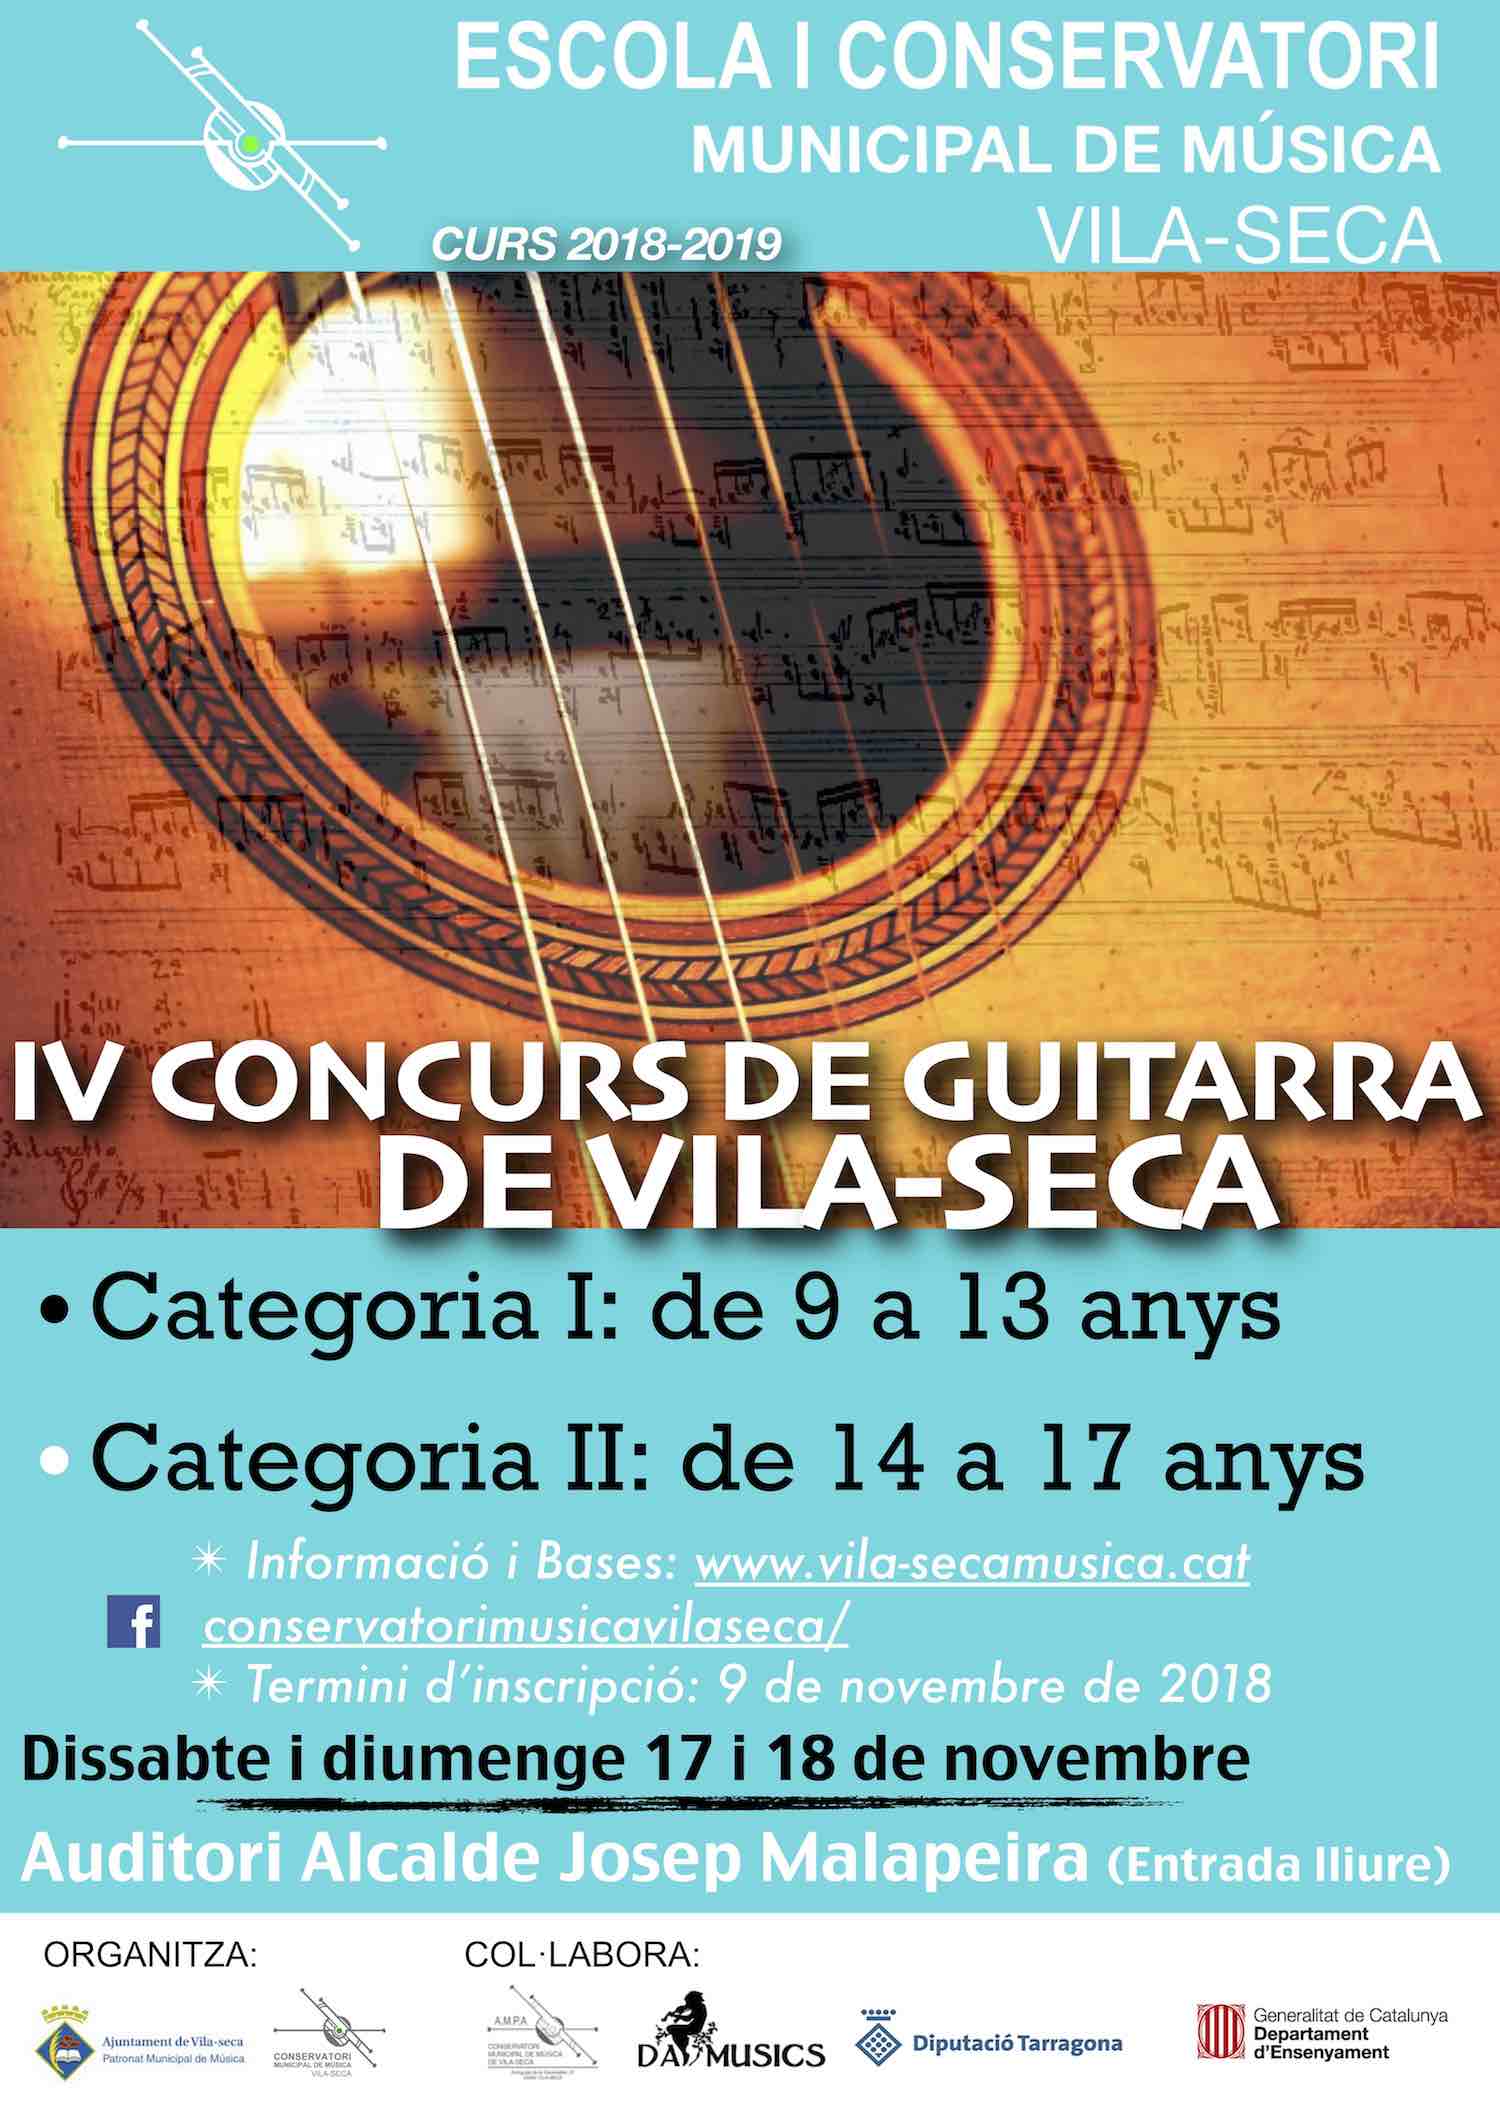 IV Concurs de Guitarra de Vila-seca